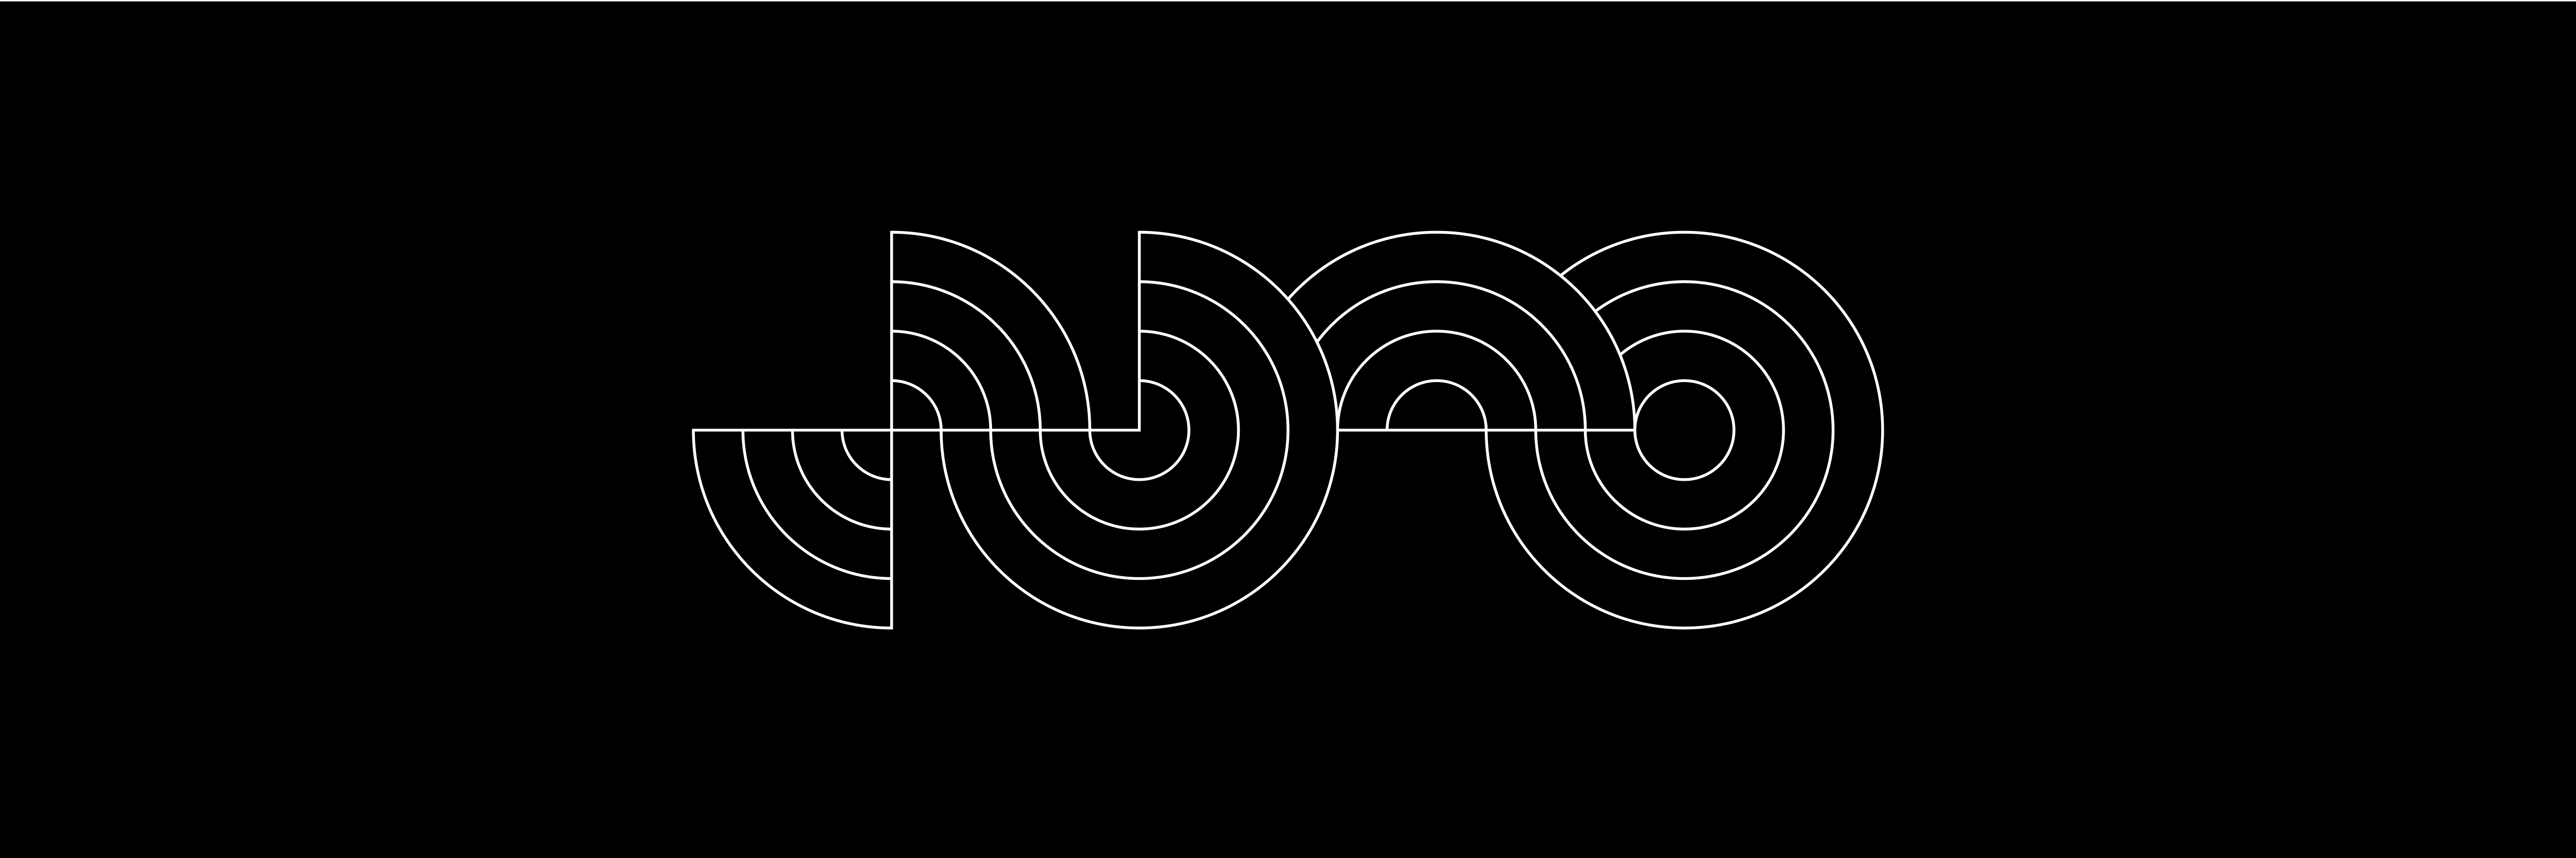 simon-p-coyle-branding-logo-design-2014-service-design-toronto